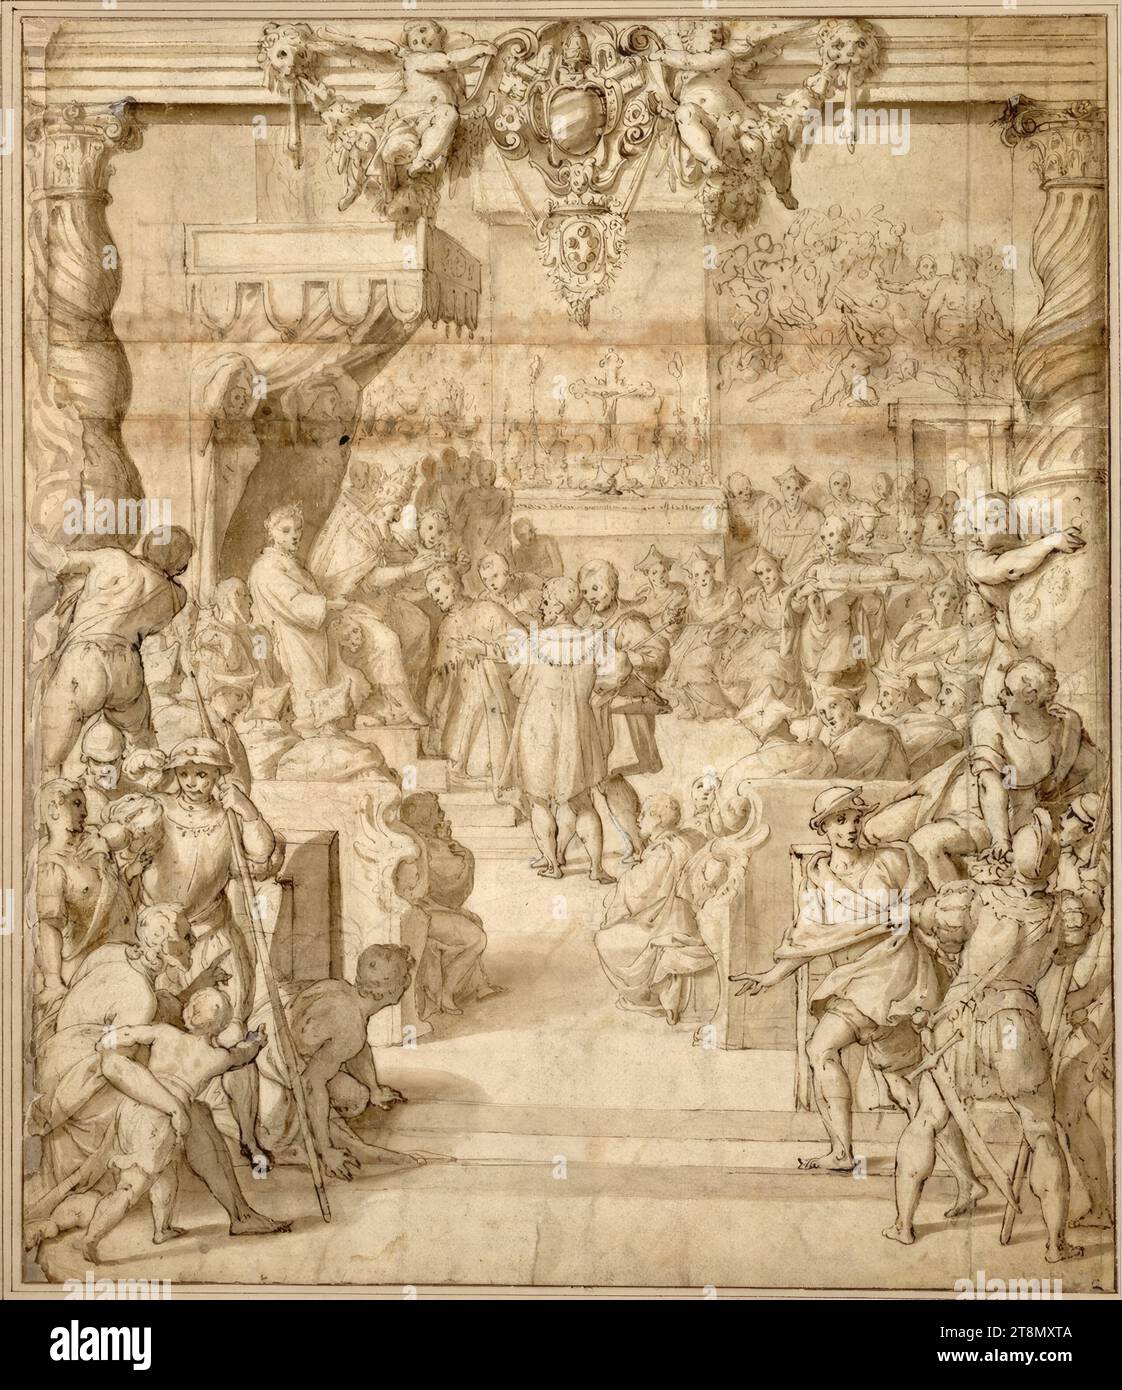 Papa Pio V Ghisleri (1566-1572) incorona Cosimo i de'Medici nella Cappella Sistina di Roma nel 1570. (A destra il Collegio dei Cardinali, attraverso il quale vengono trasportati i doni; a destra, sul retro, sopra la porta, sulla parete posteriore, c'è un suggerimento del "giudizio universale" di Michelangelo; cornice a colonna con gli stemmi dei Ghisleri e dei Medici), Cesare nebbia (Orvieto intorno al 1536 - circa 1614 Orvieto), disegno, gesso, penna, lavato, 40 x 34,5 cm, l.l. Moritz von Fries; r.b. Duca Alberto di Sassonia-Teschen;, in basso a destra nell'inchiostro '2 Foto Stock